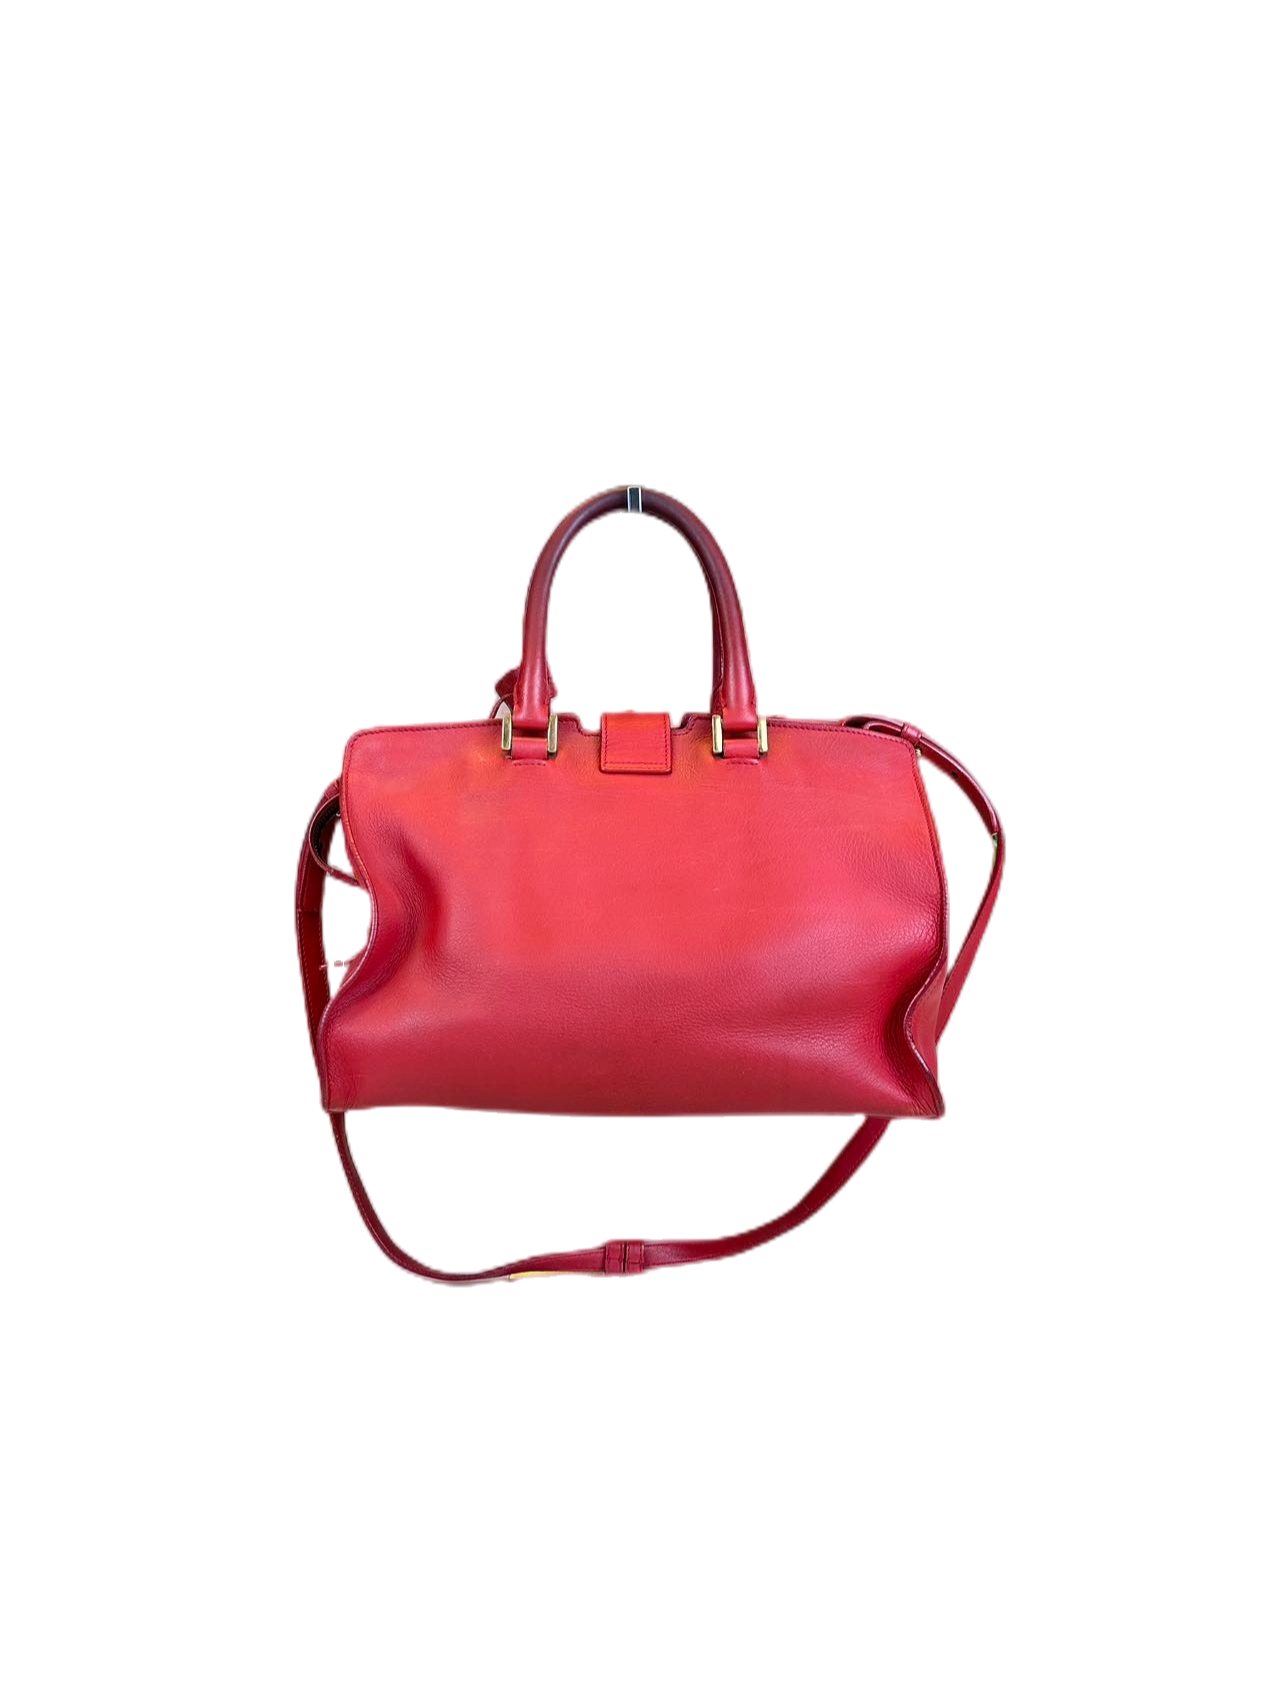 Preloved Saint Laurent Y Logo Chyc Red Leather Shoulder Bag